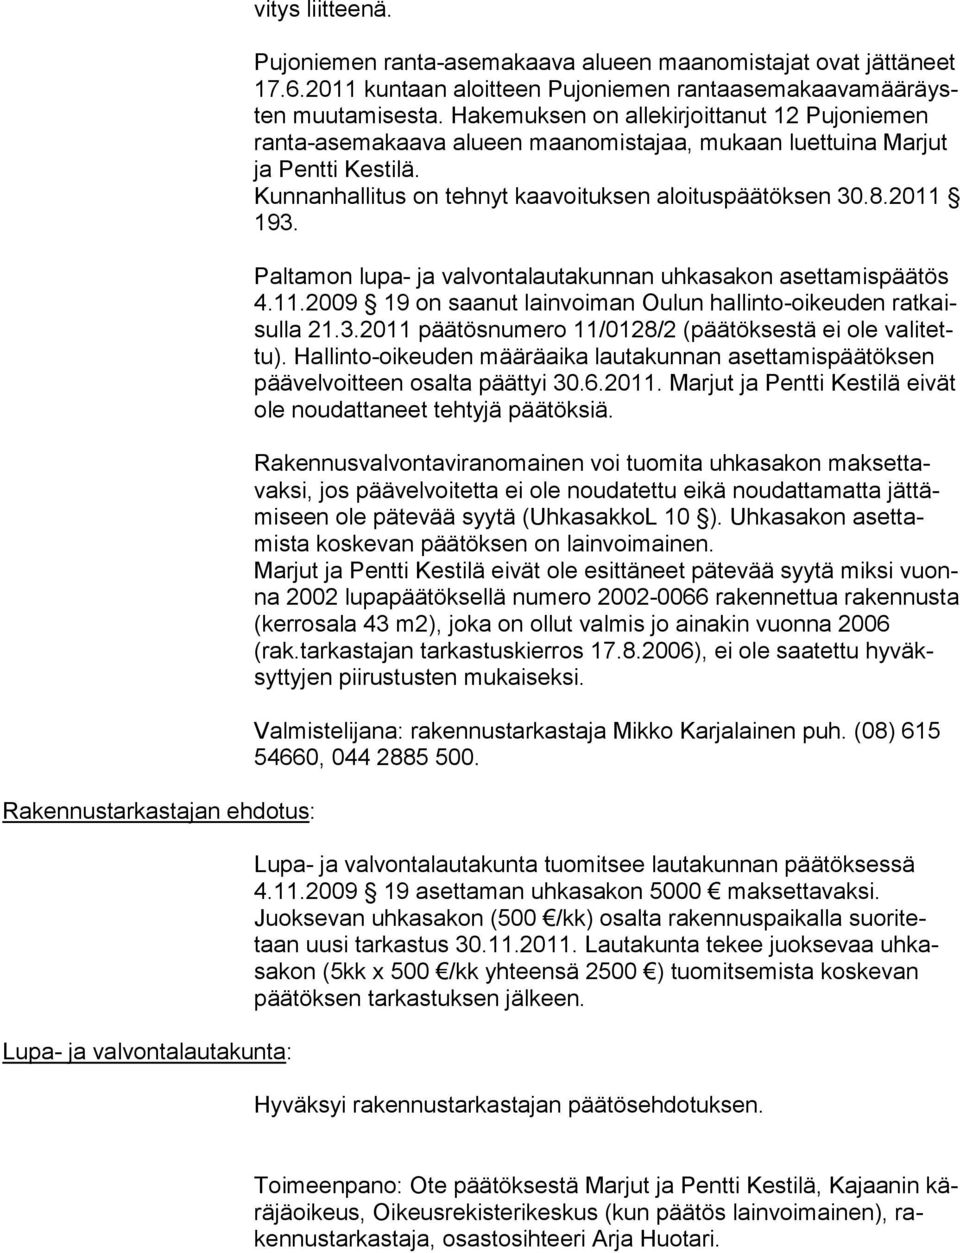 Hakemuksen on allekirjoittanut 12 Pujoniemen ran ta-asemakaava alueen maanomistajaa, mukaan luettuina Marjut ja Pentti Kestilä. Kunnanhallitus on tehnyt kaavoituksen aloituspäätöksen 30.8.2011 193.